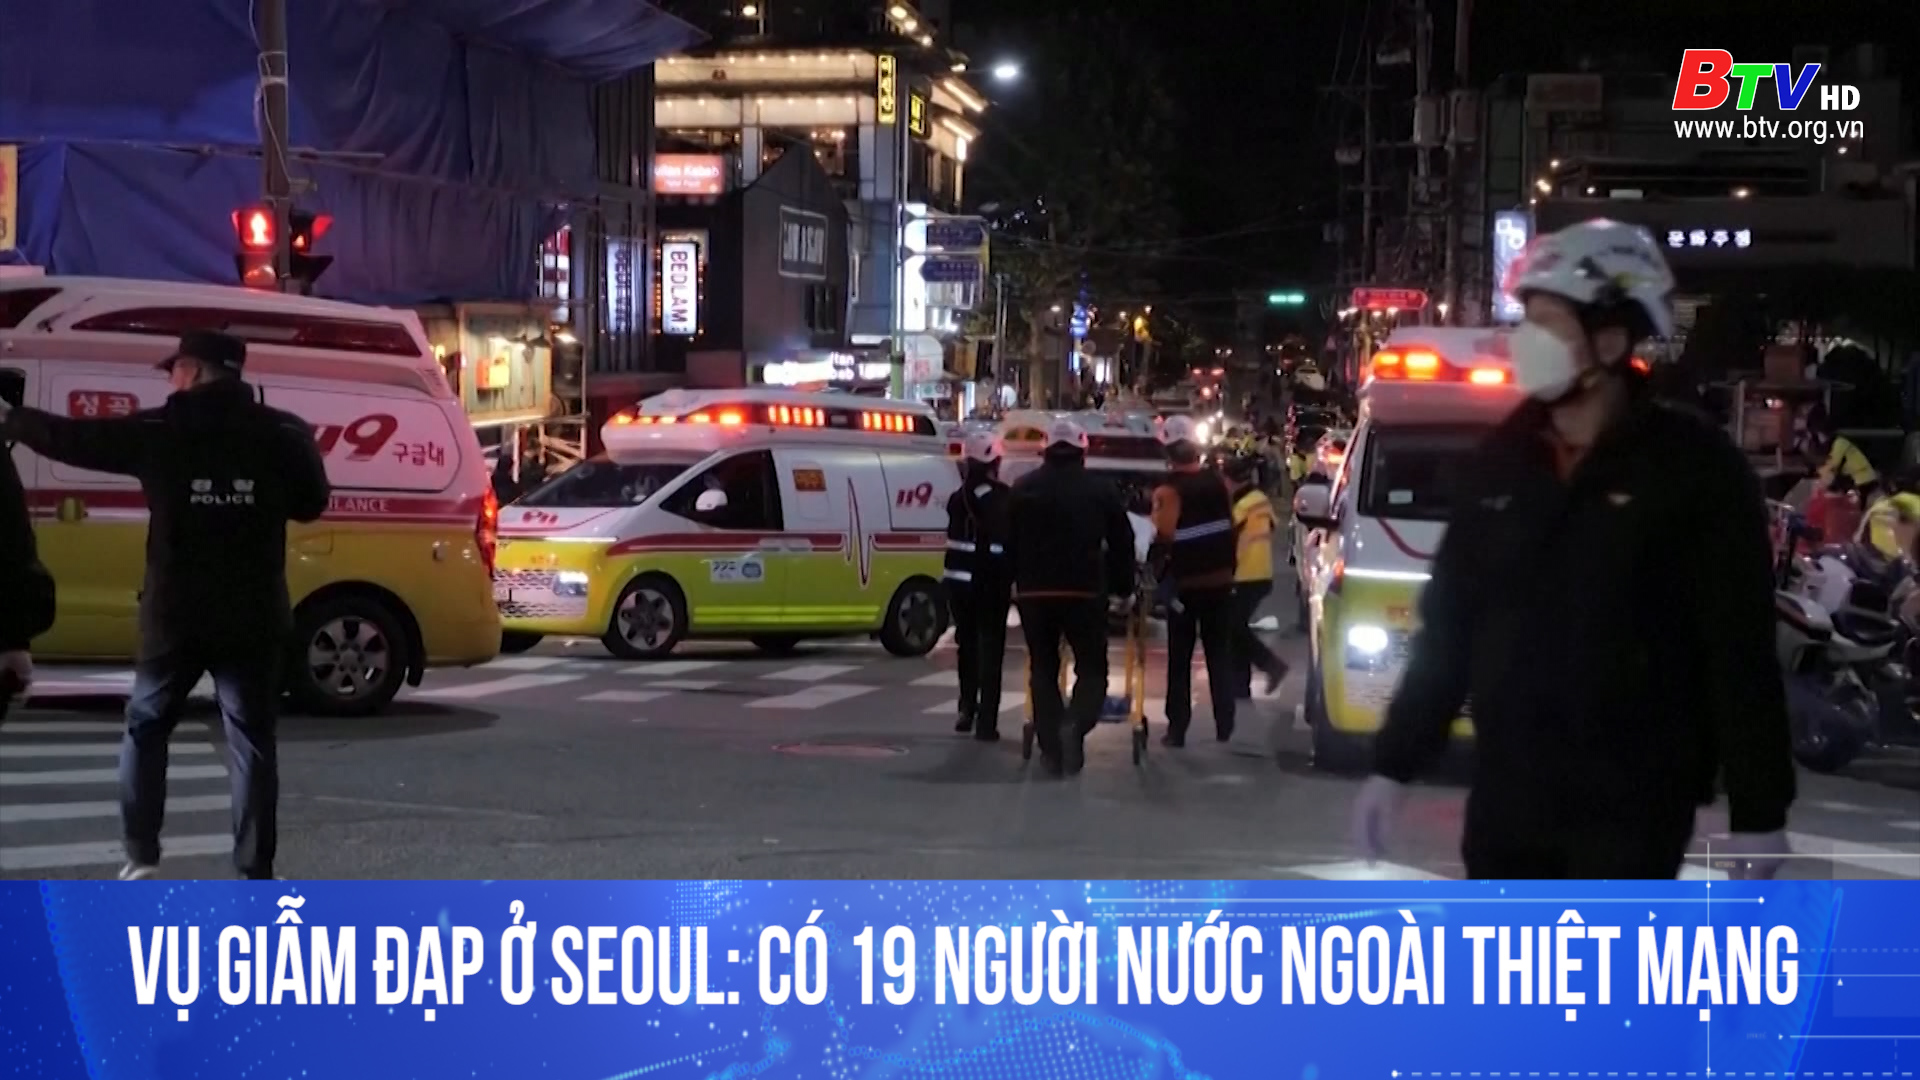 Vụ giẫm đạp ở Seoul: Có 19 người nước ngoài thiệt mạng